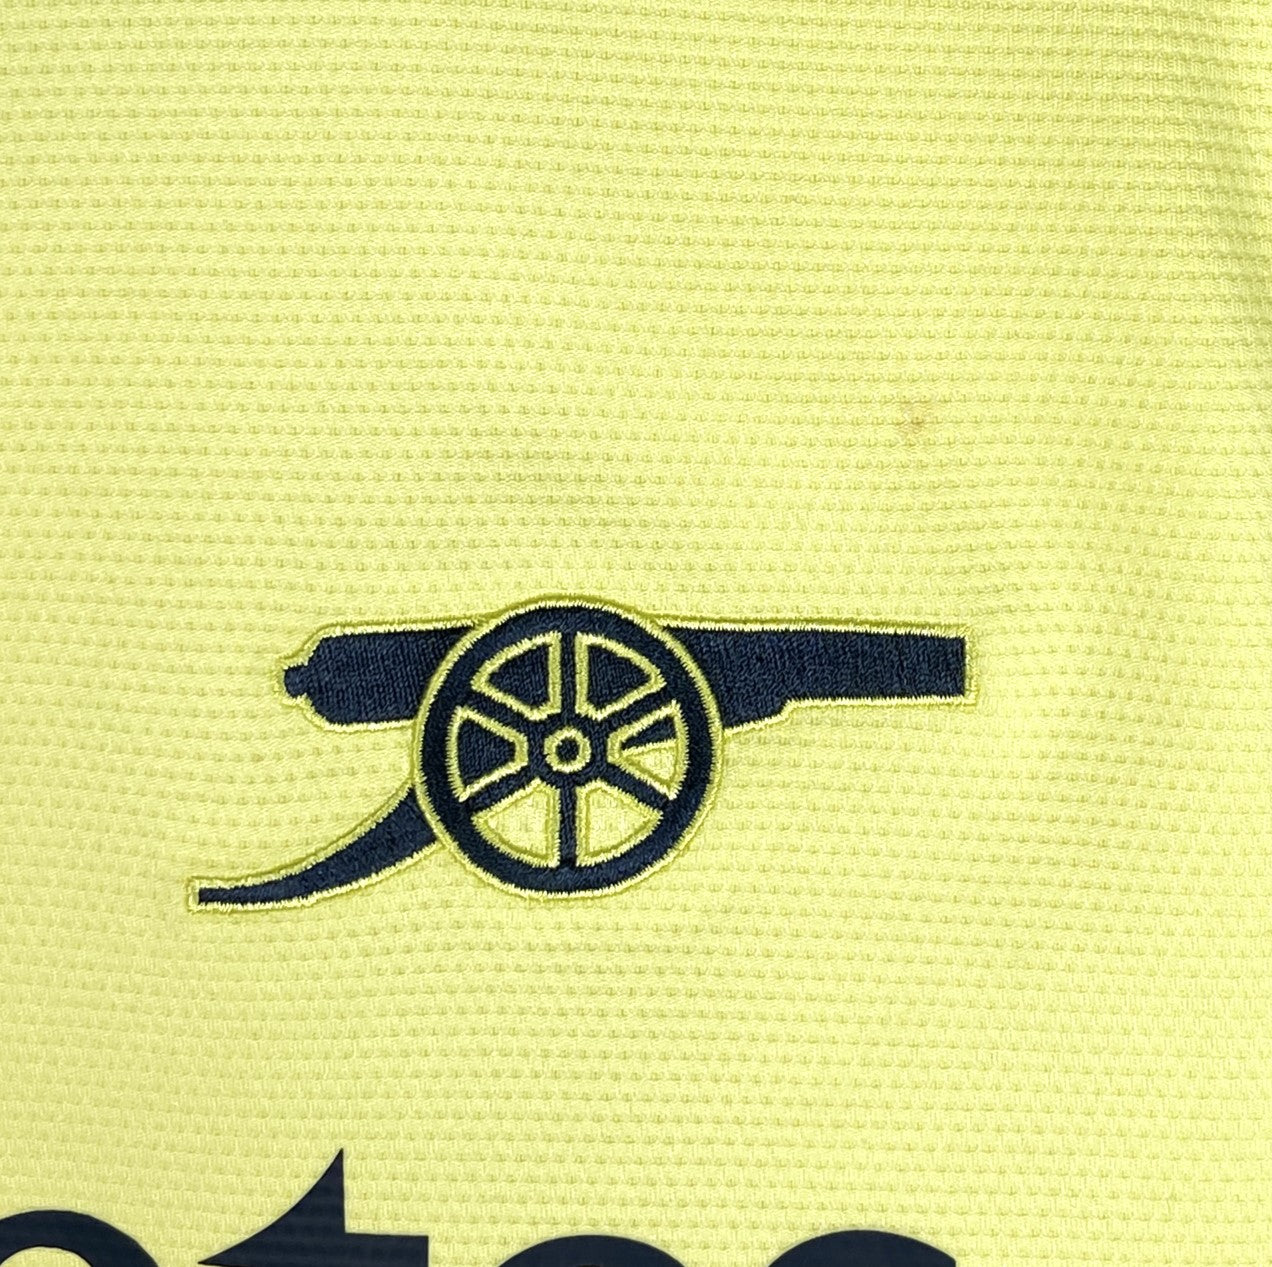 2021 2022 Arsenal Adidas Away Football Shirt Men's Medium